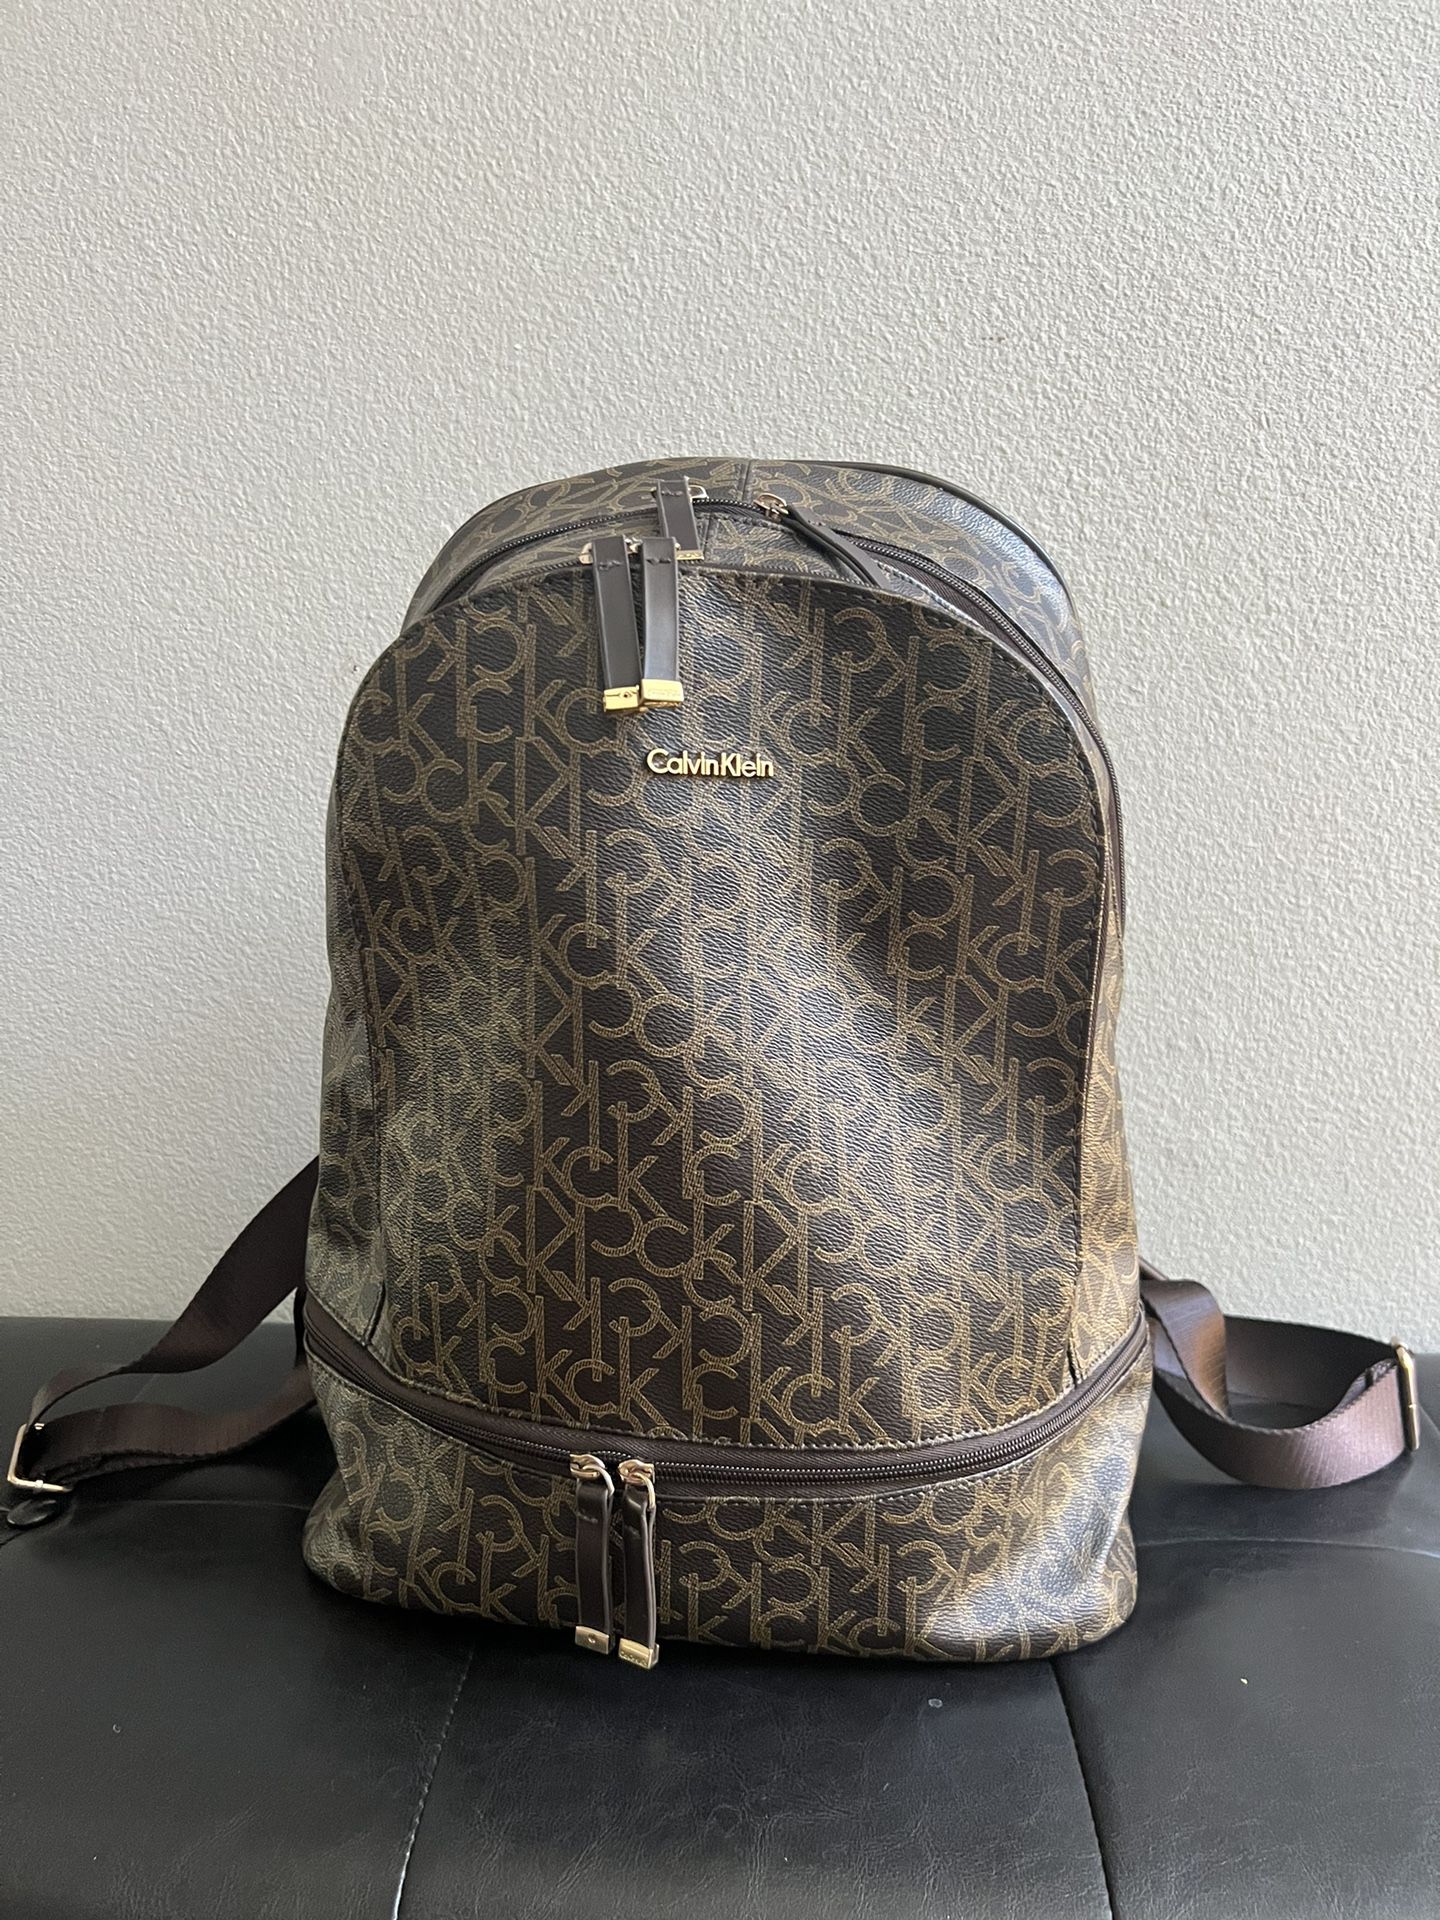 Travel Backpack For Women. Calvin Klein